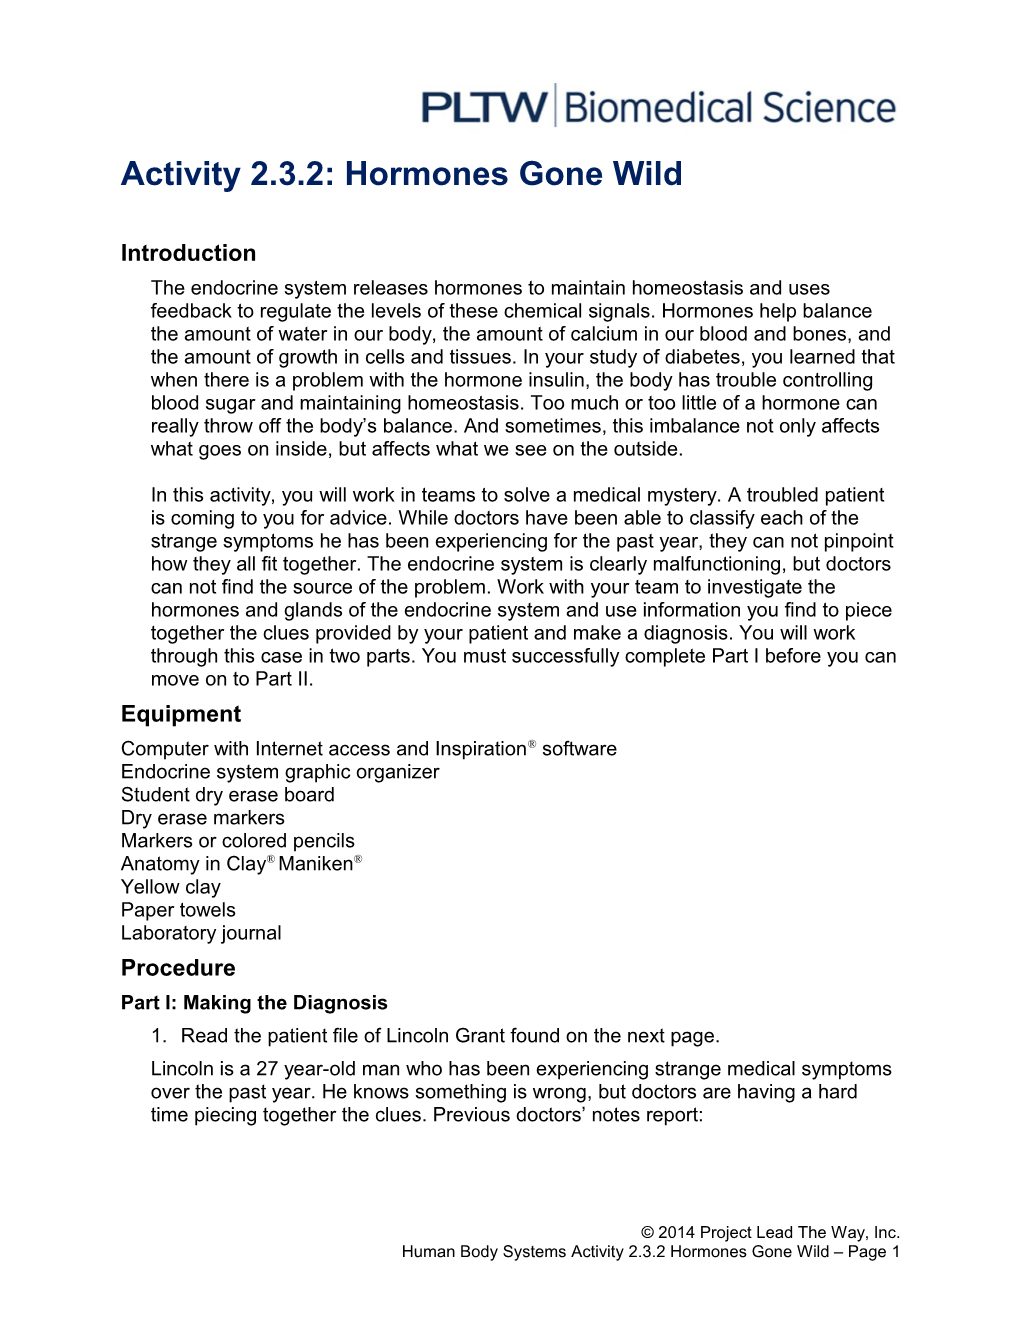 Activity 2.3.2: Hormones Gone Wild